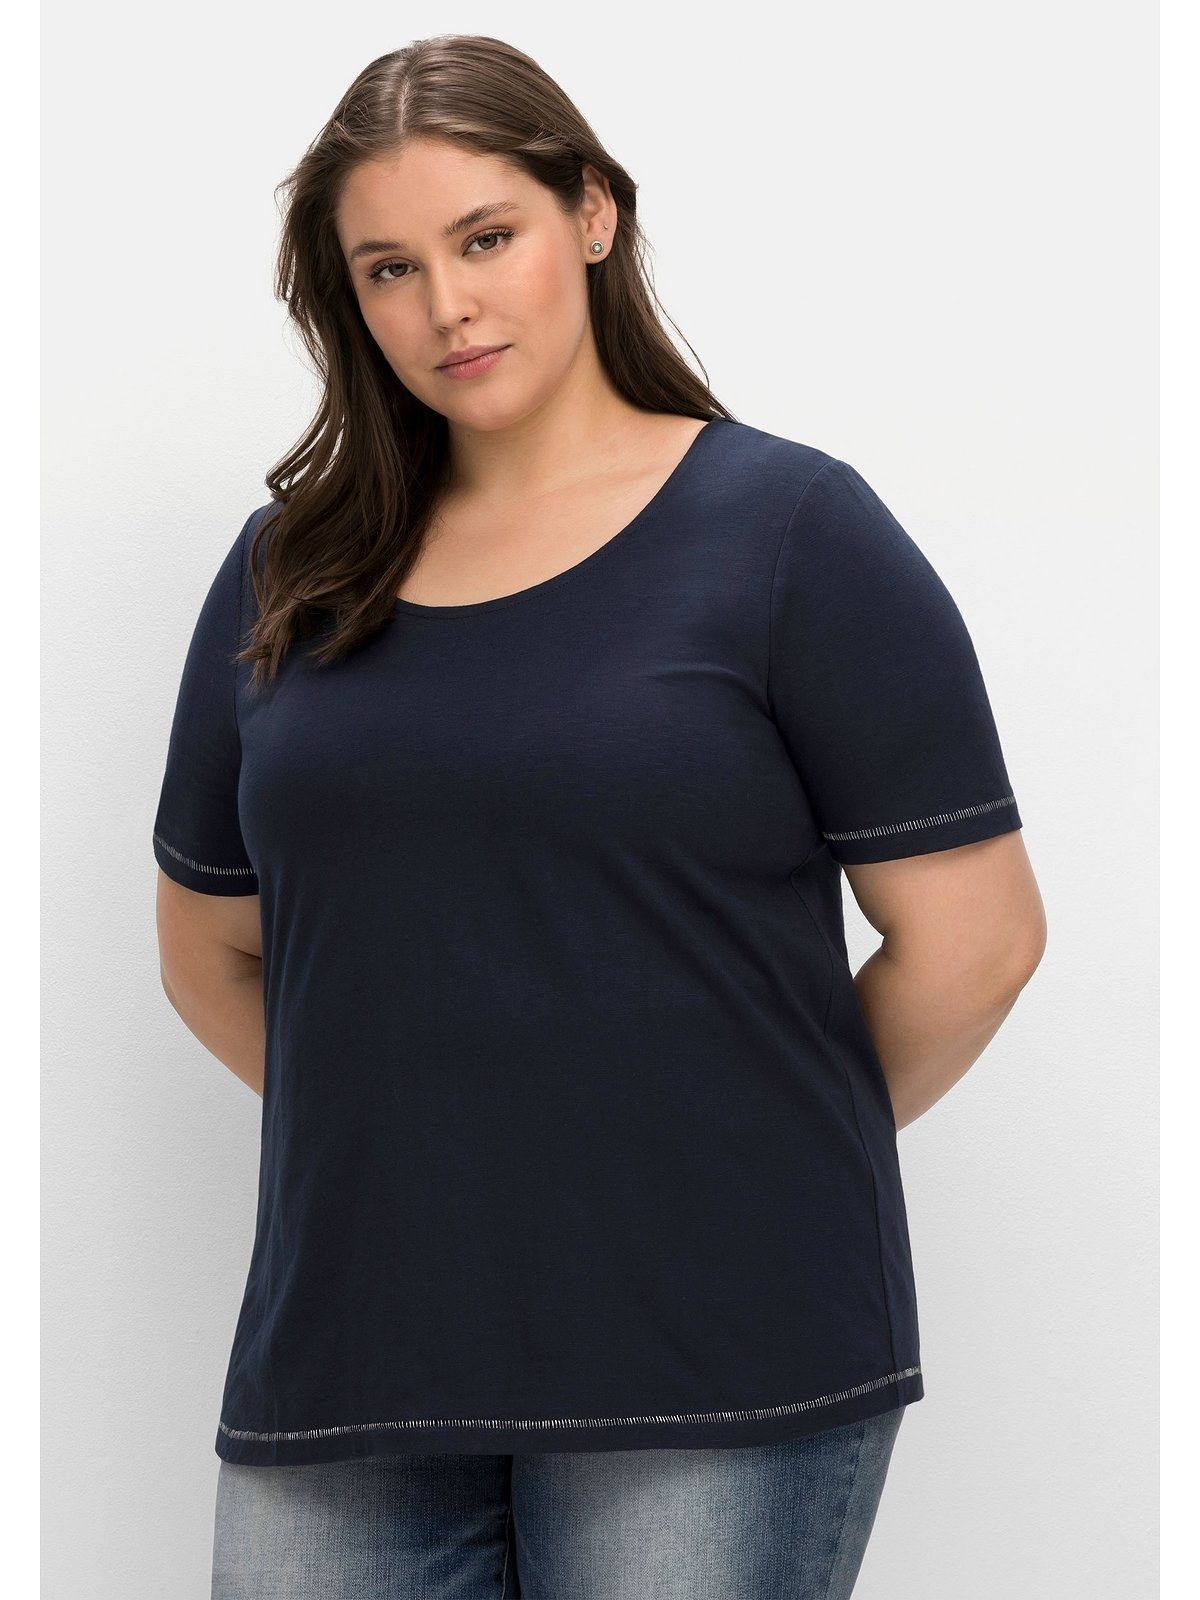 Sheego T-Shirt Große Größen der nachtblau hinten mit auf Print Schulter